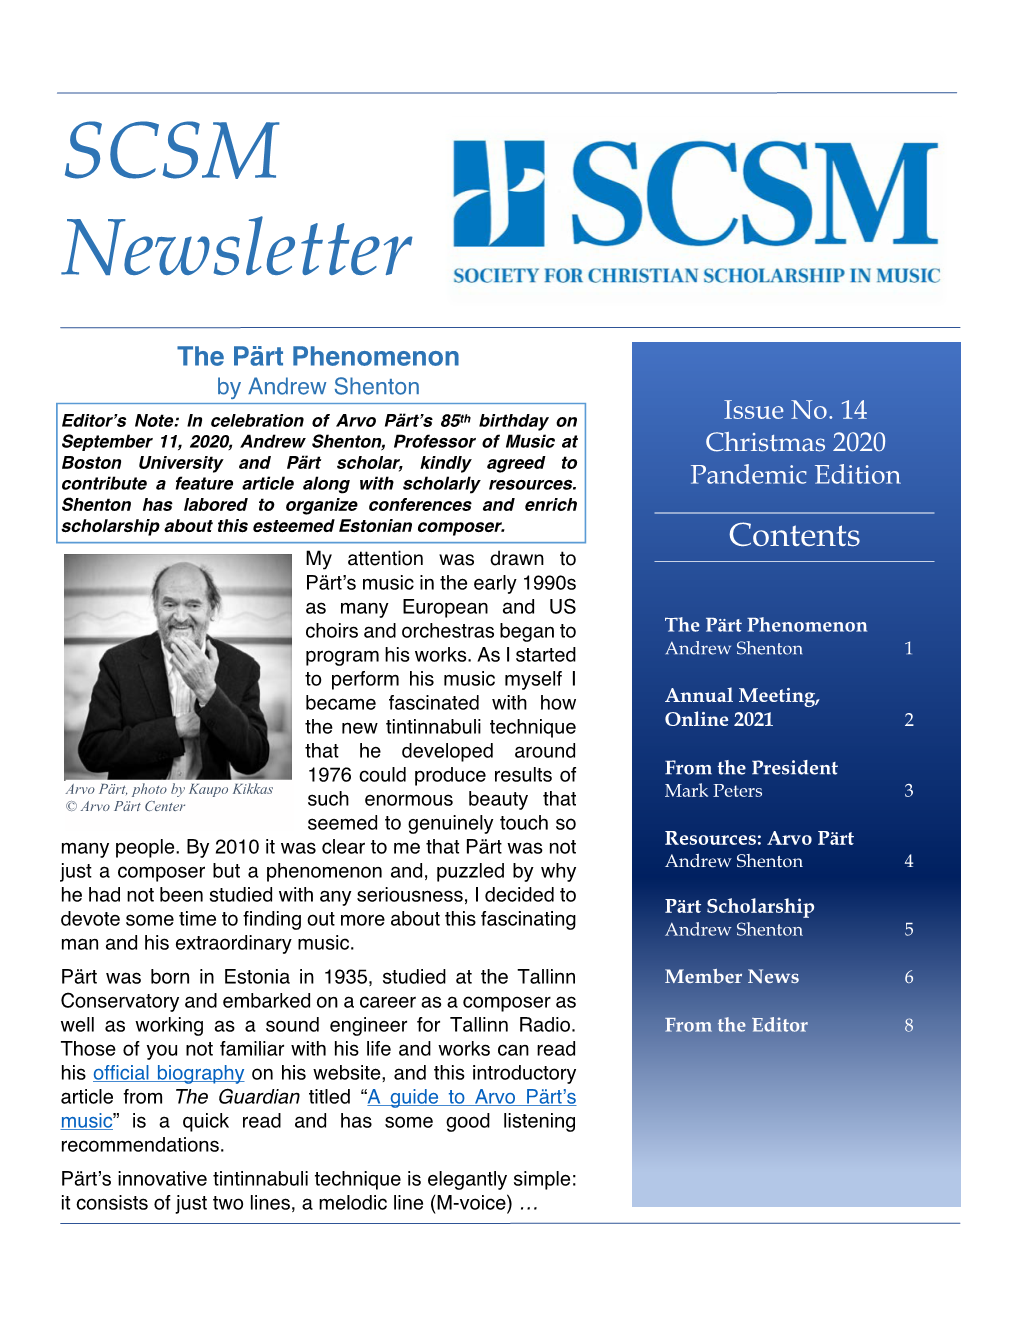 SCSM Newsletter 14